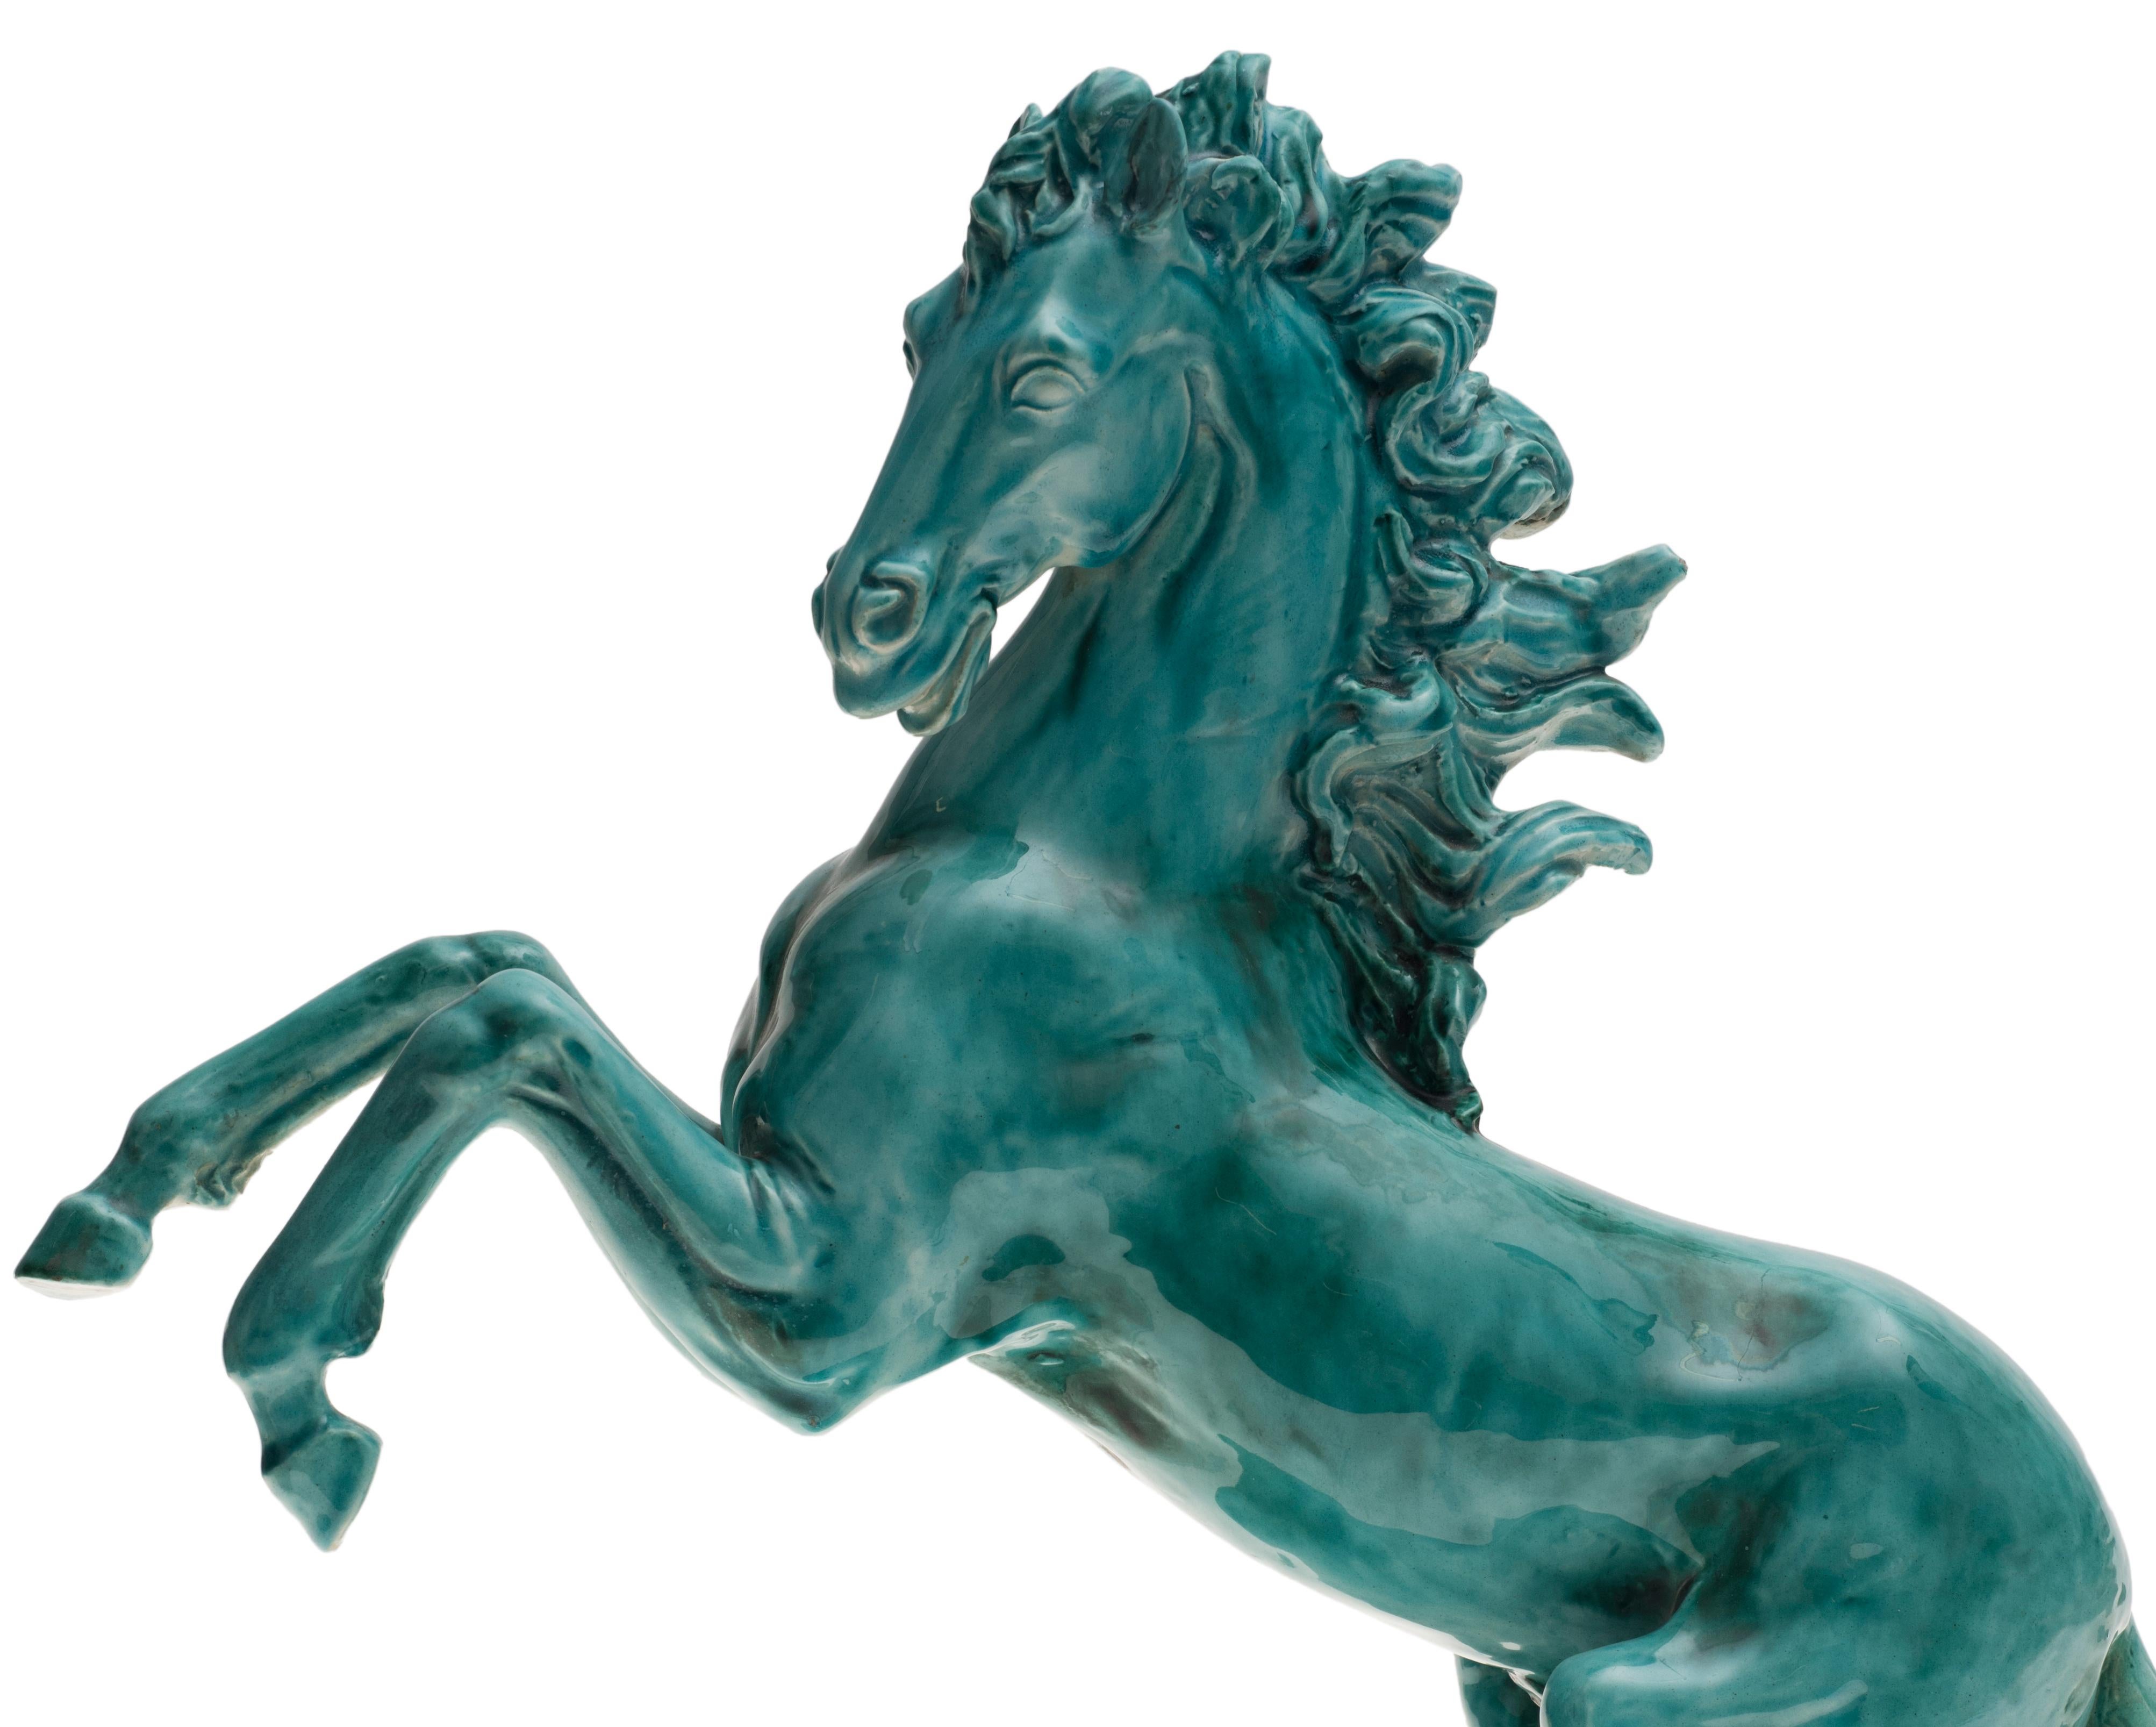 ceramic horses for sale